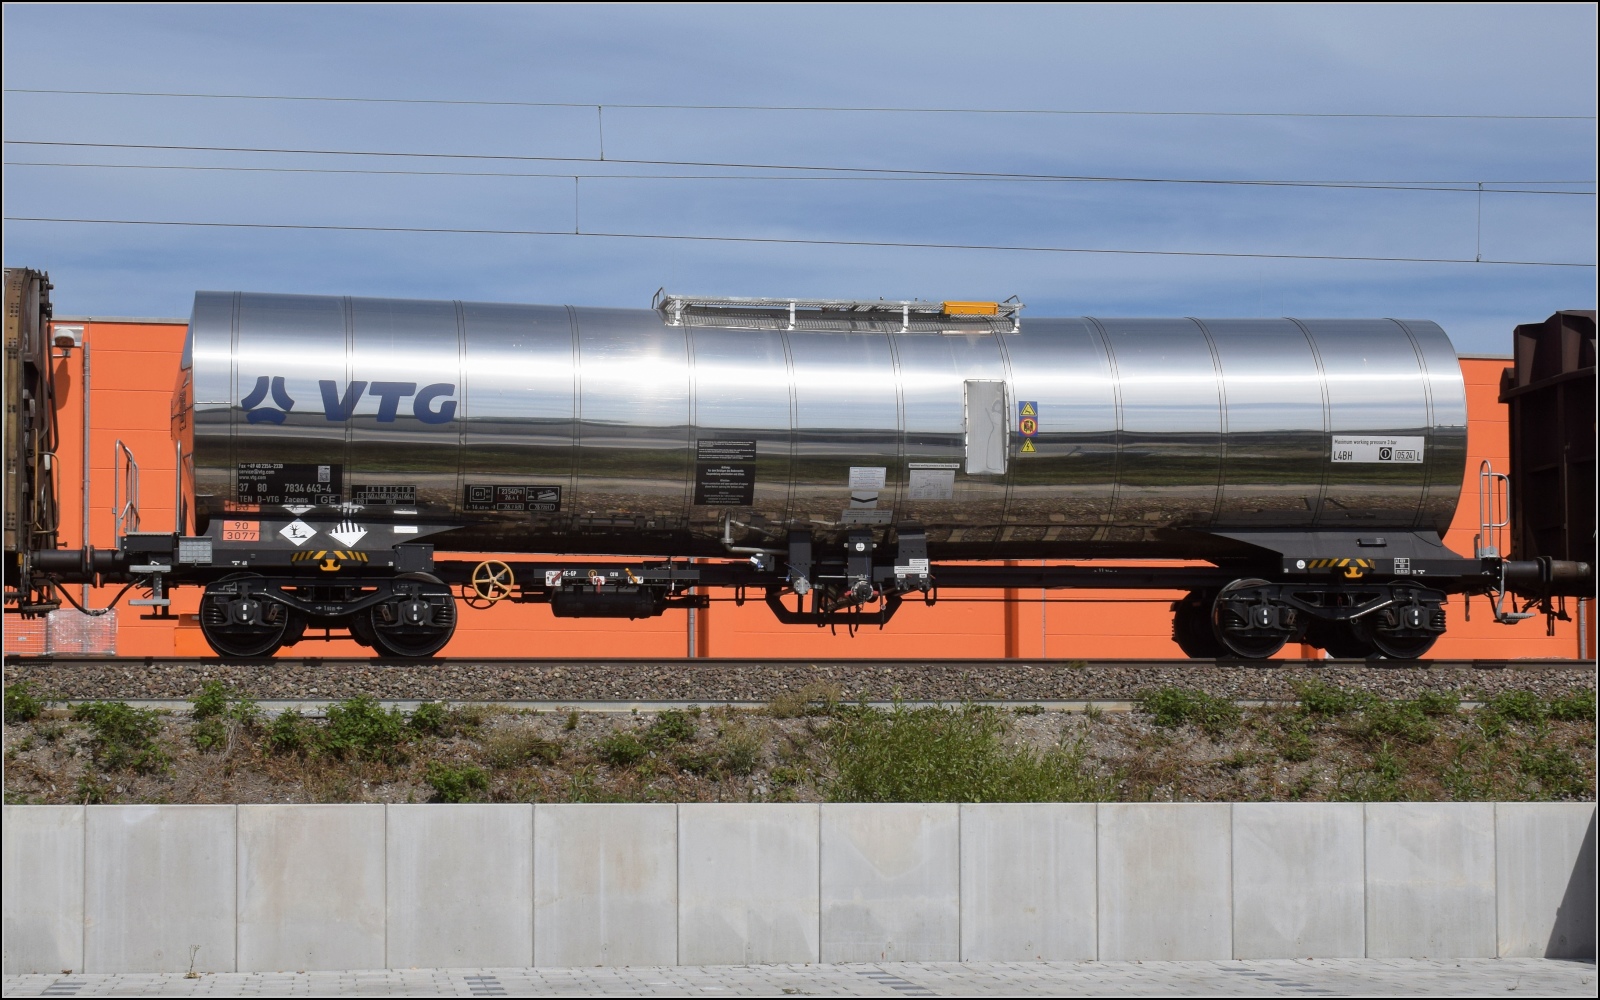 Ein sauberer Edelstahlkesselwagen im Zug nach Süden hinter 185 097 fordert auch mal genauere Betrachtung. 37 80 7834 643-4 D-VTG der VTG mit Kennzeichnug für einen umweltgefährdenden Stoff. Emmendingen, September 2022.